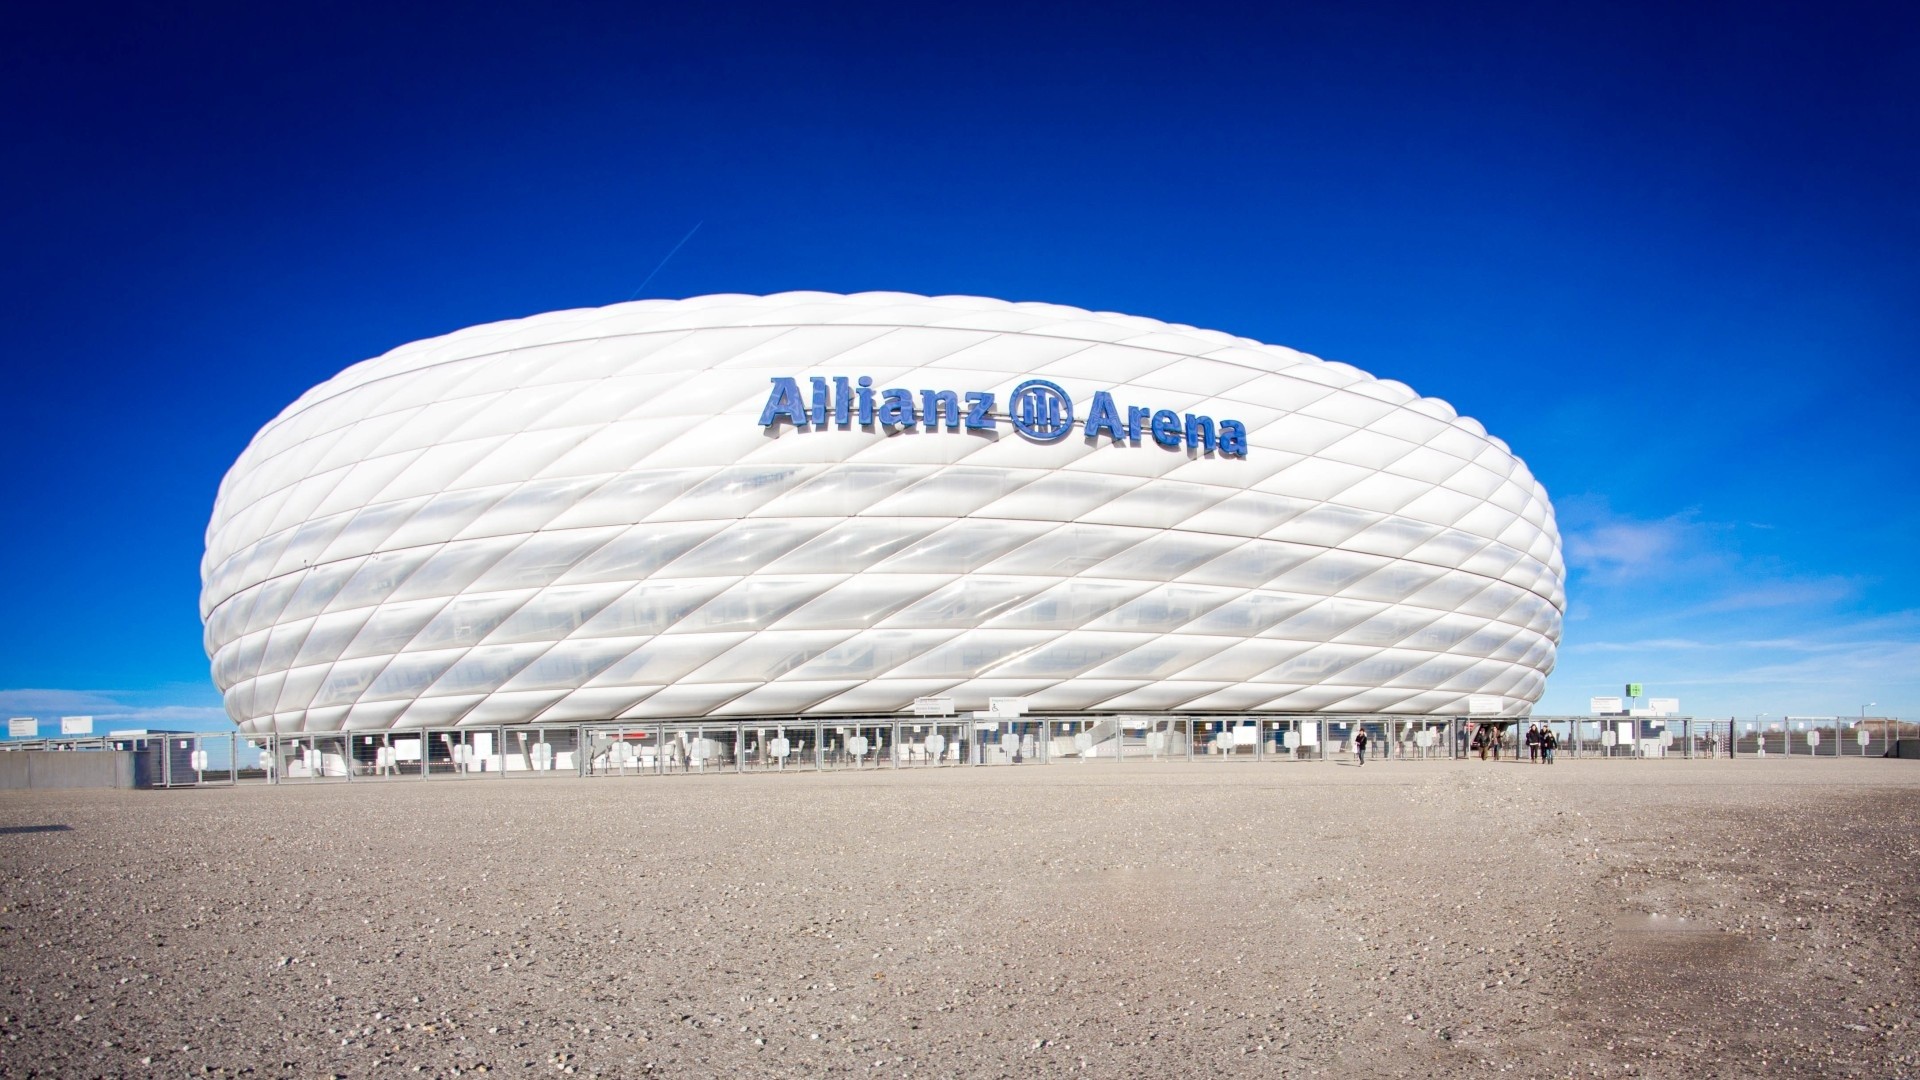 1920x1080 Allianz Arena Stadium Munich | 1920 x 1080 ...